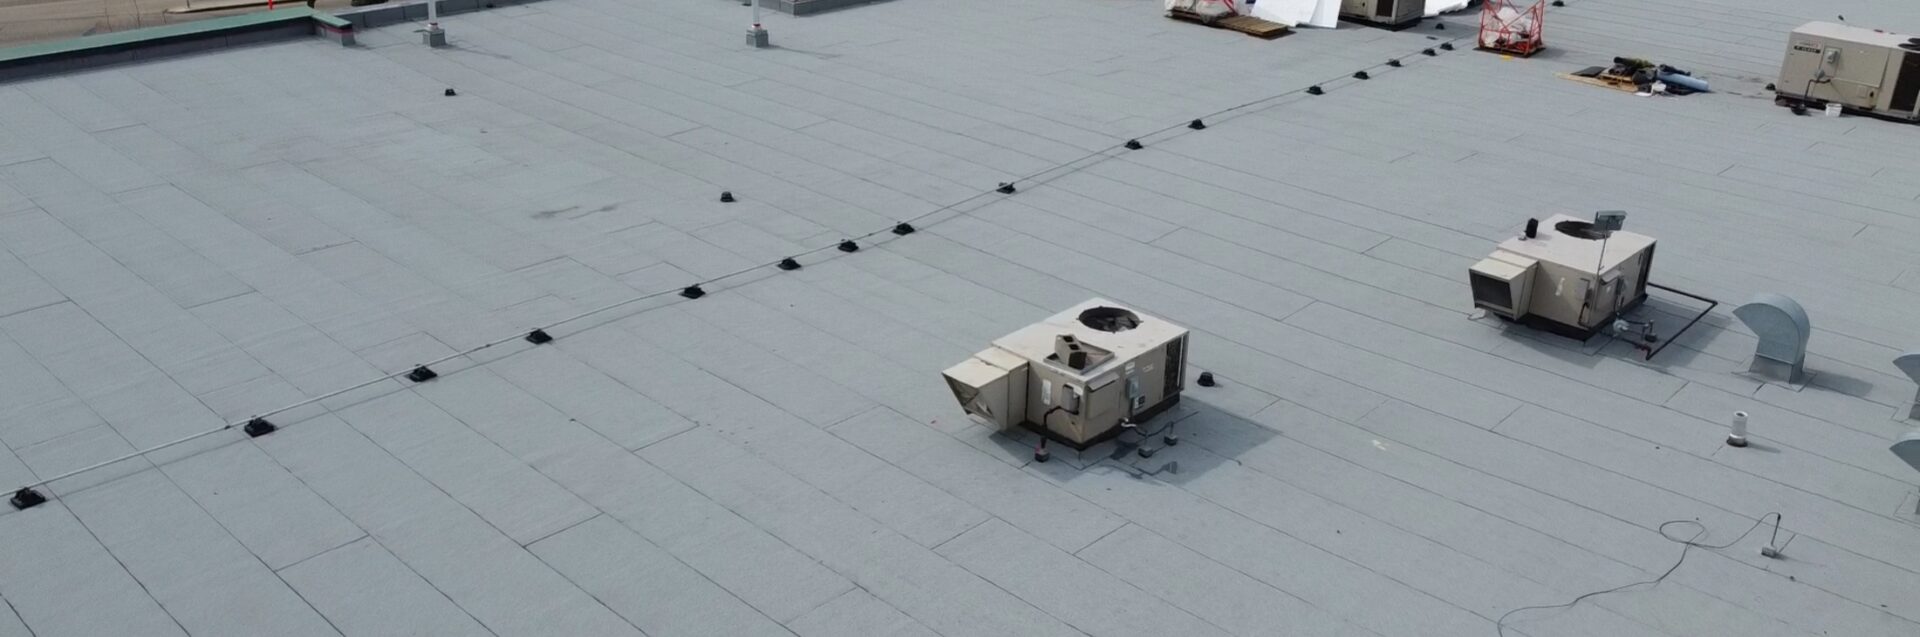 Industrial roofing in Edmonton